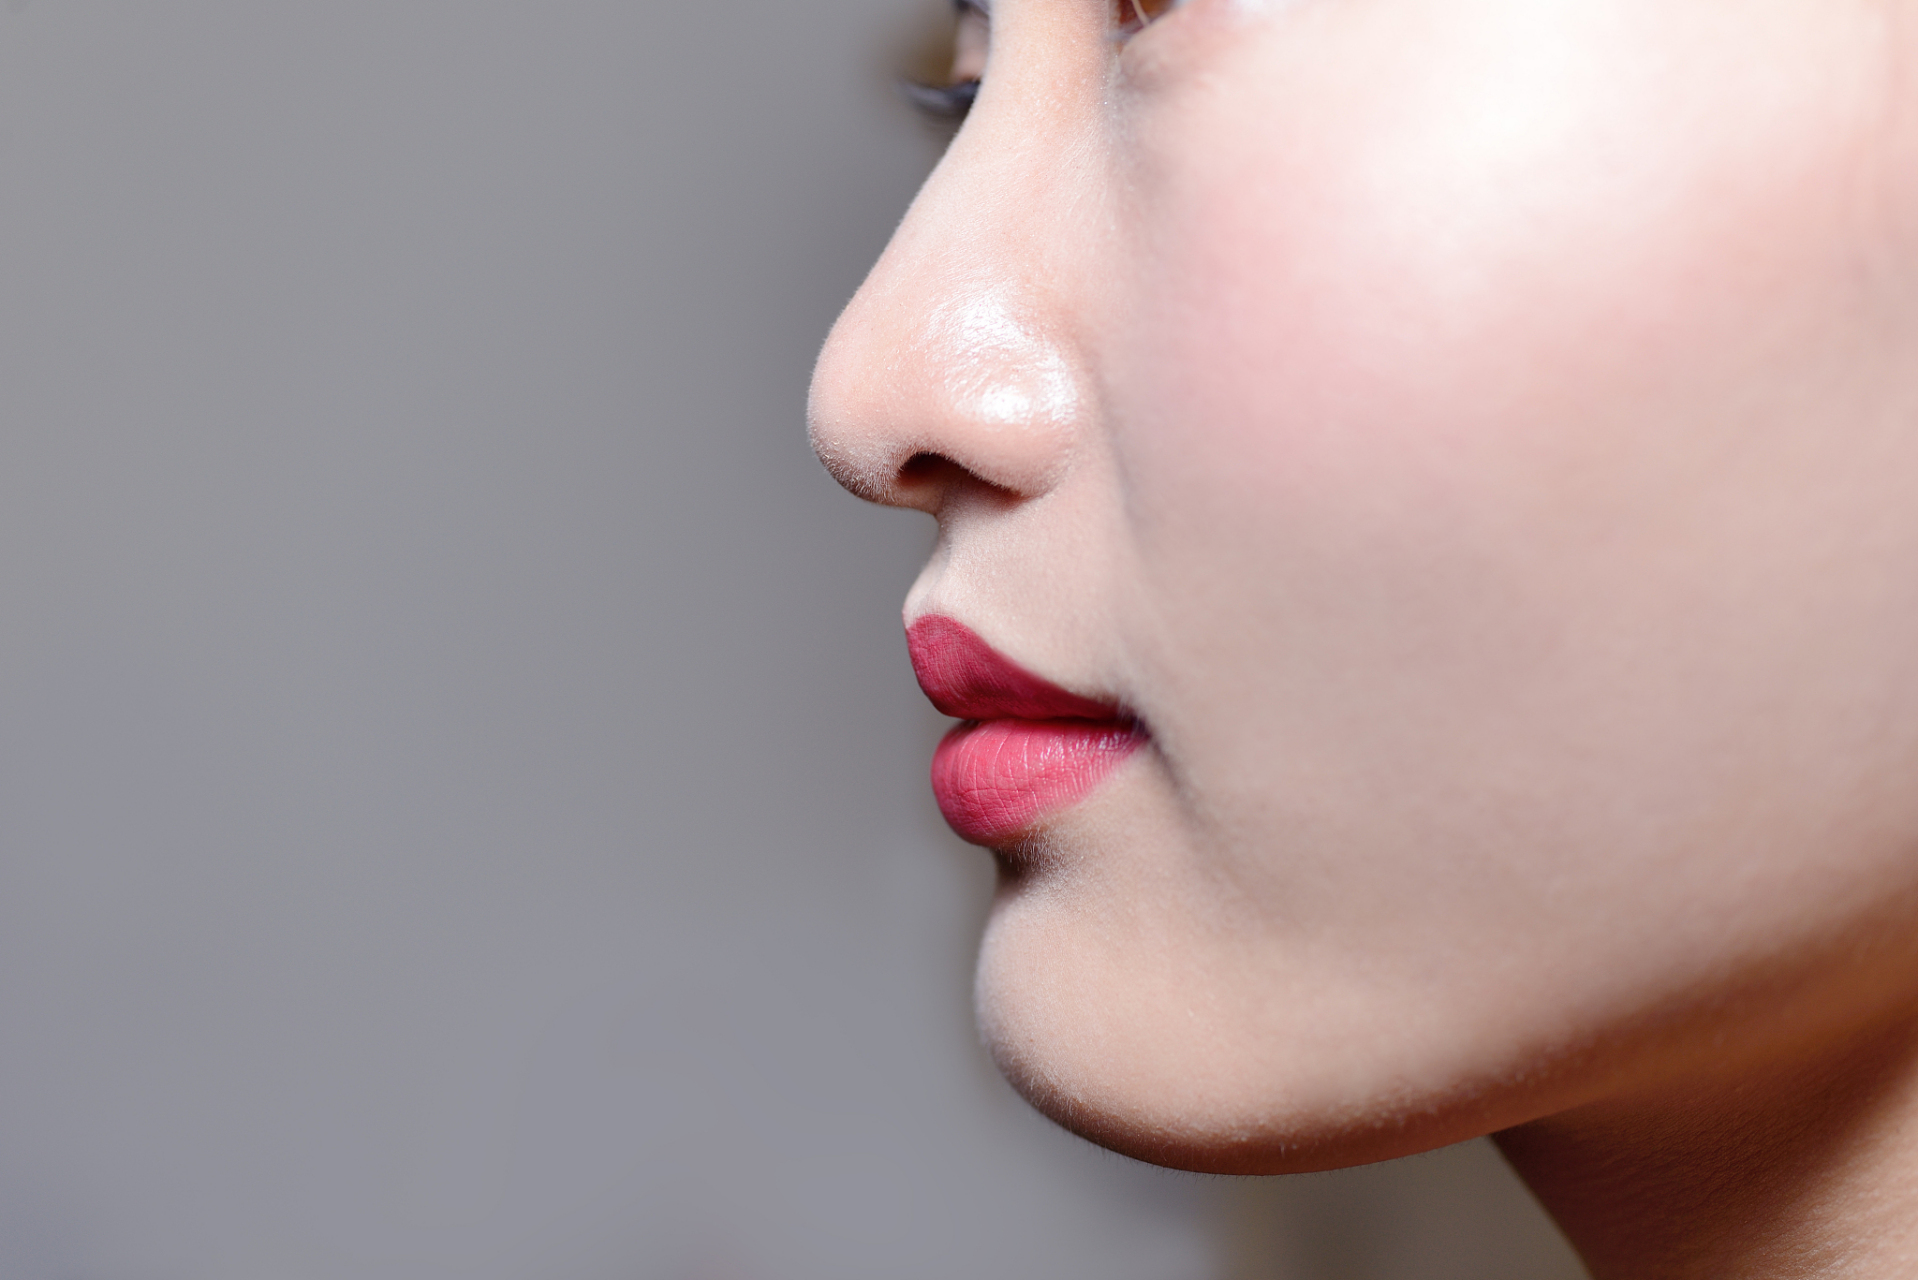 扁平鼻子如何改善  引言: 在美学标准中,一个挺拔,饱满的鼻子能给面部